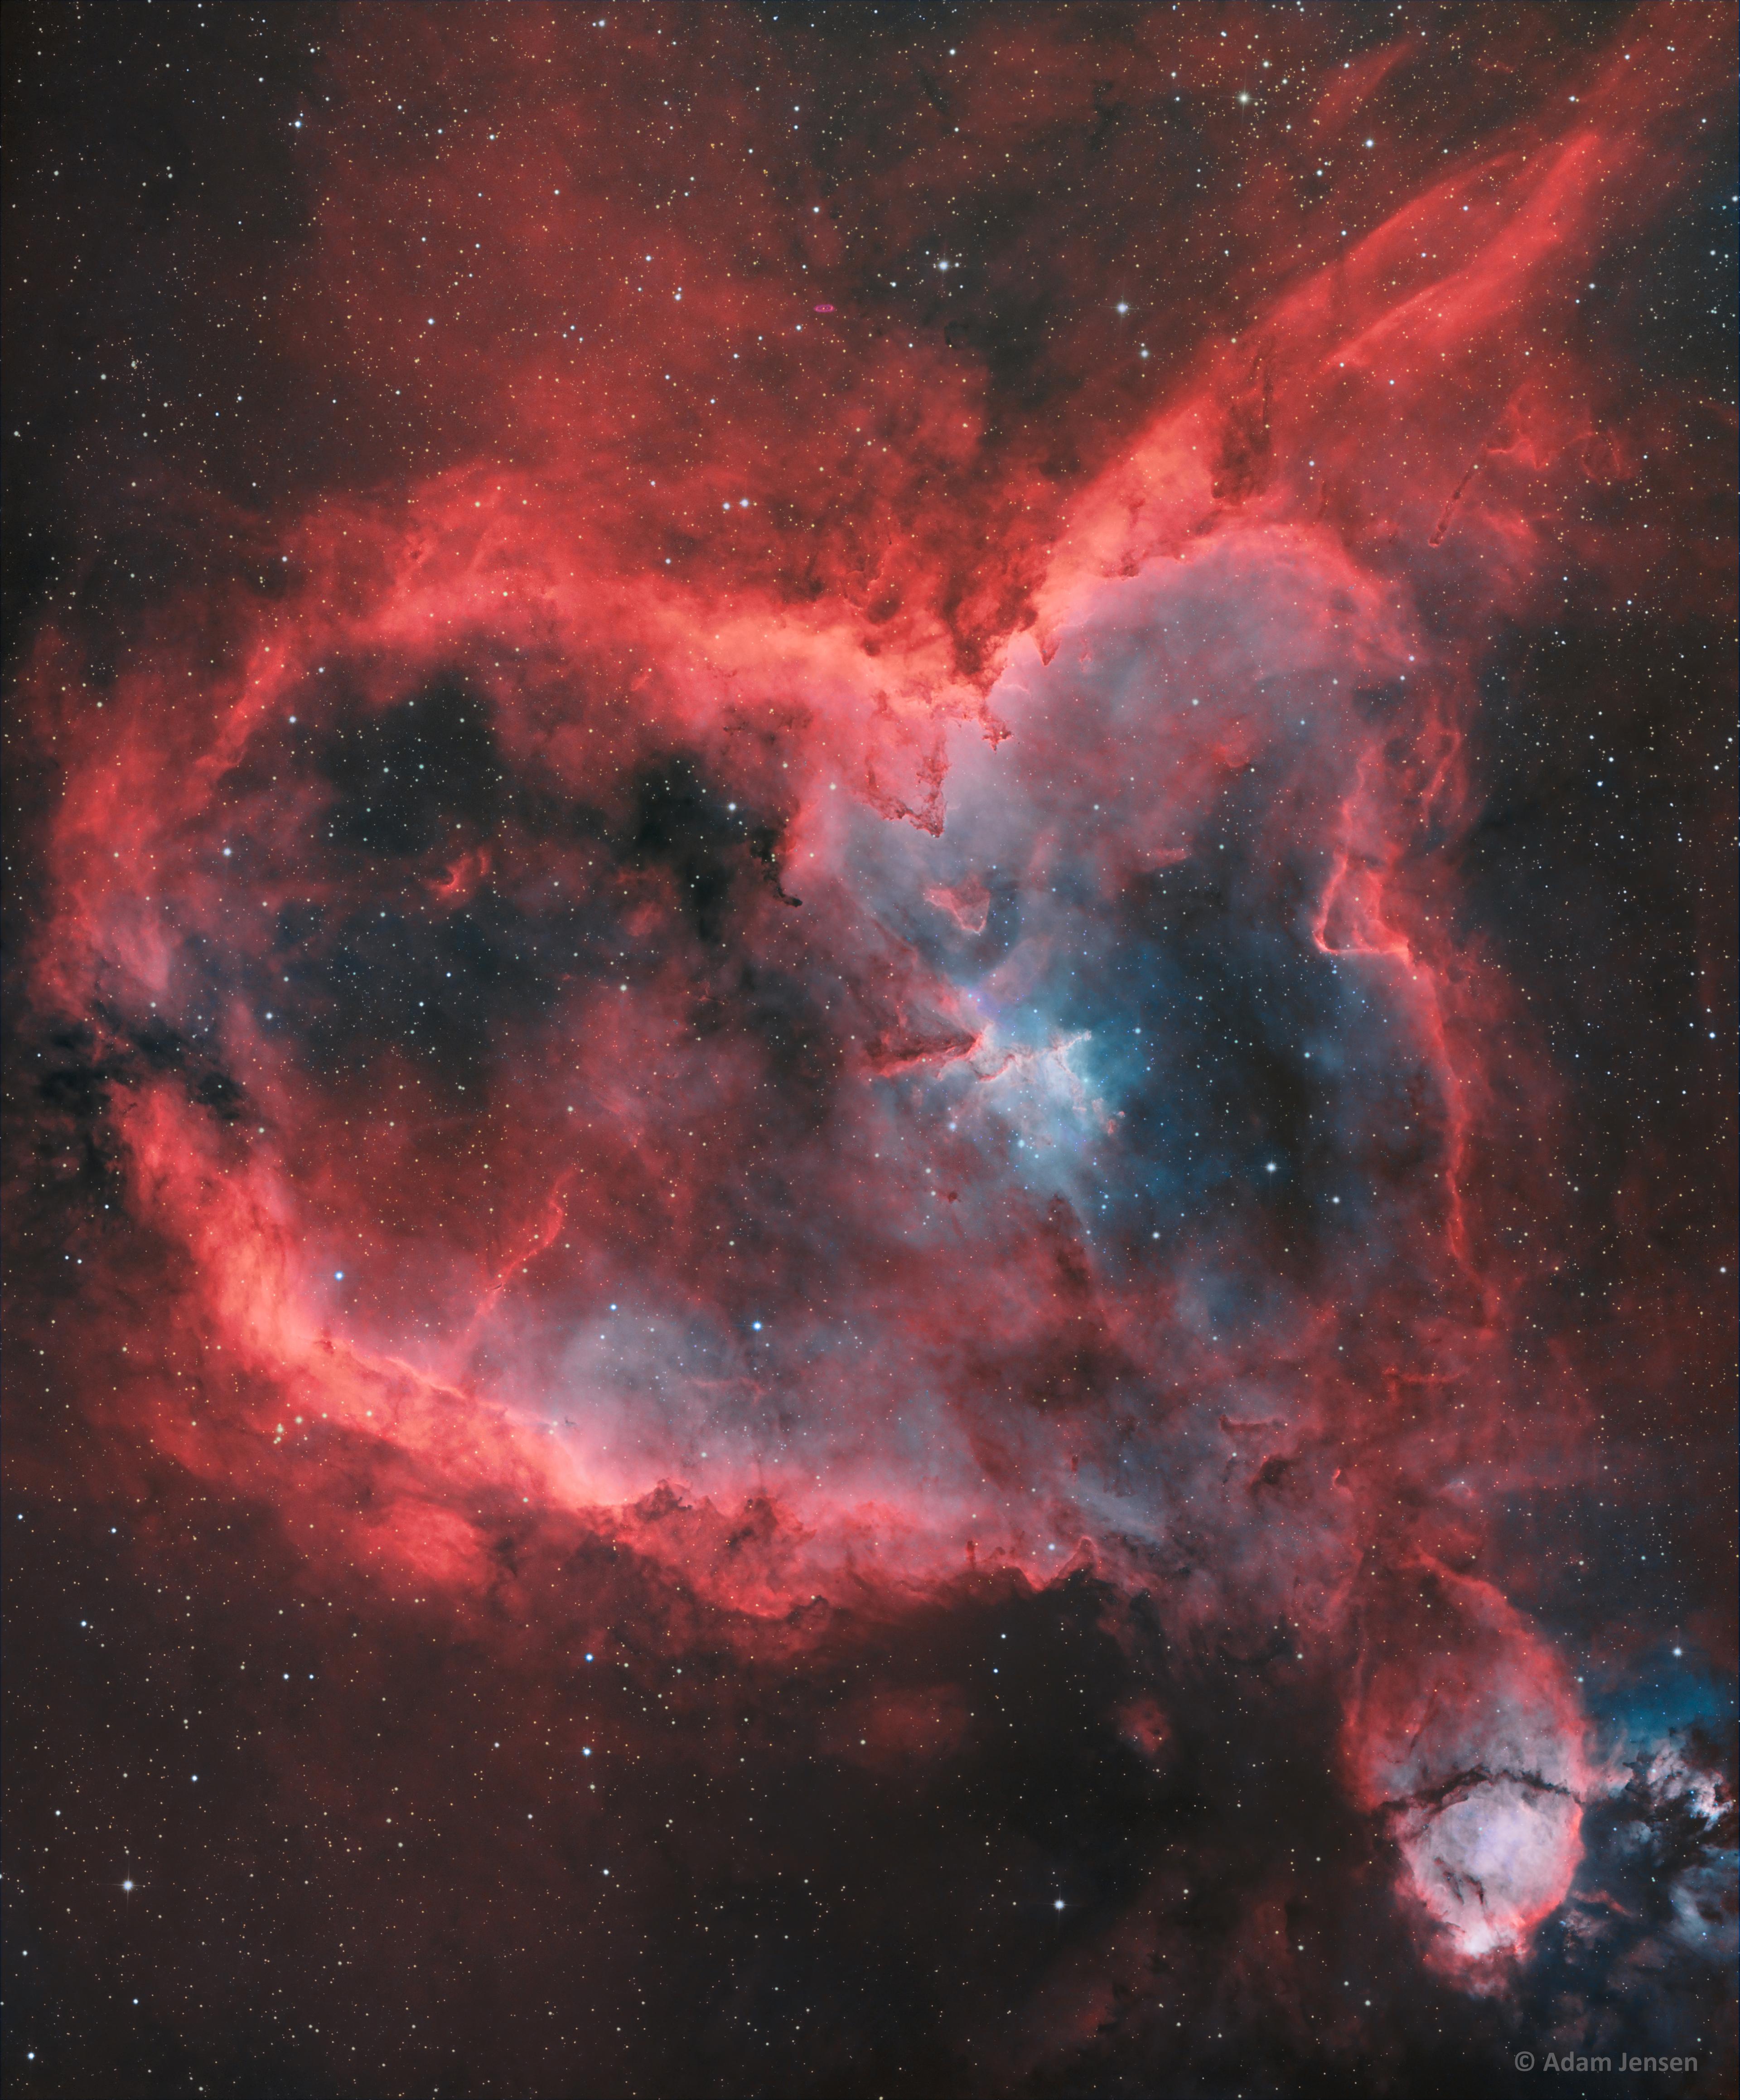 سديم يشبه القلب يظهر كشغاف أحمر وفي داخله تجويف فارغ تقريباً. تتناثر النجوم على امتداد الصورة